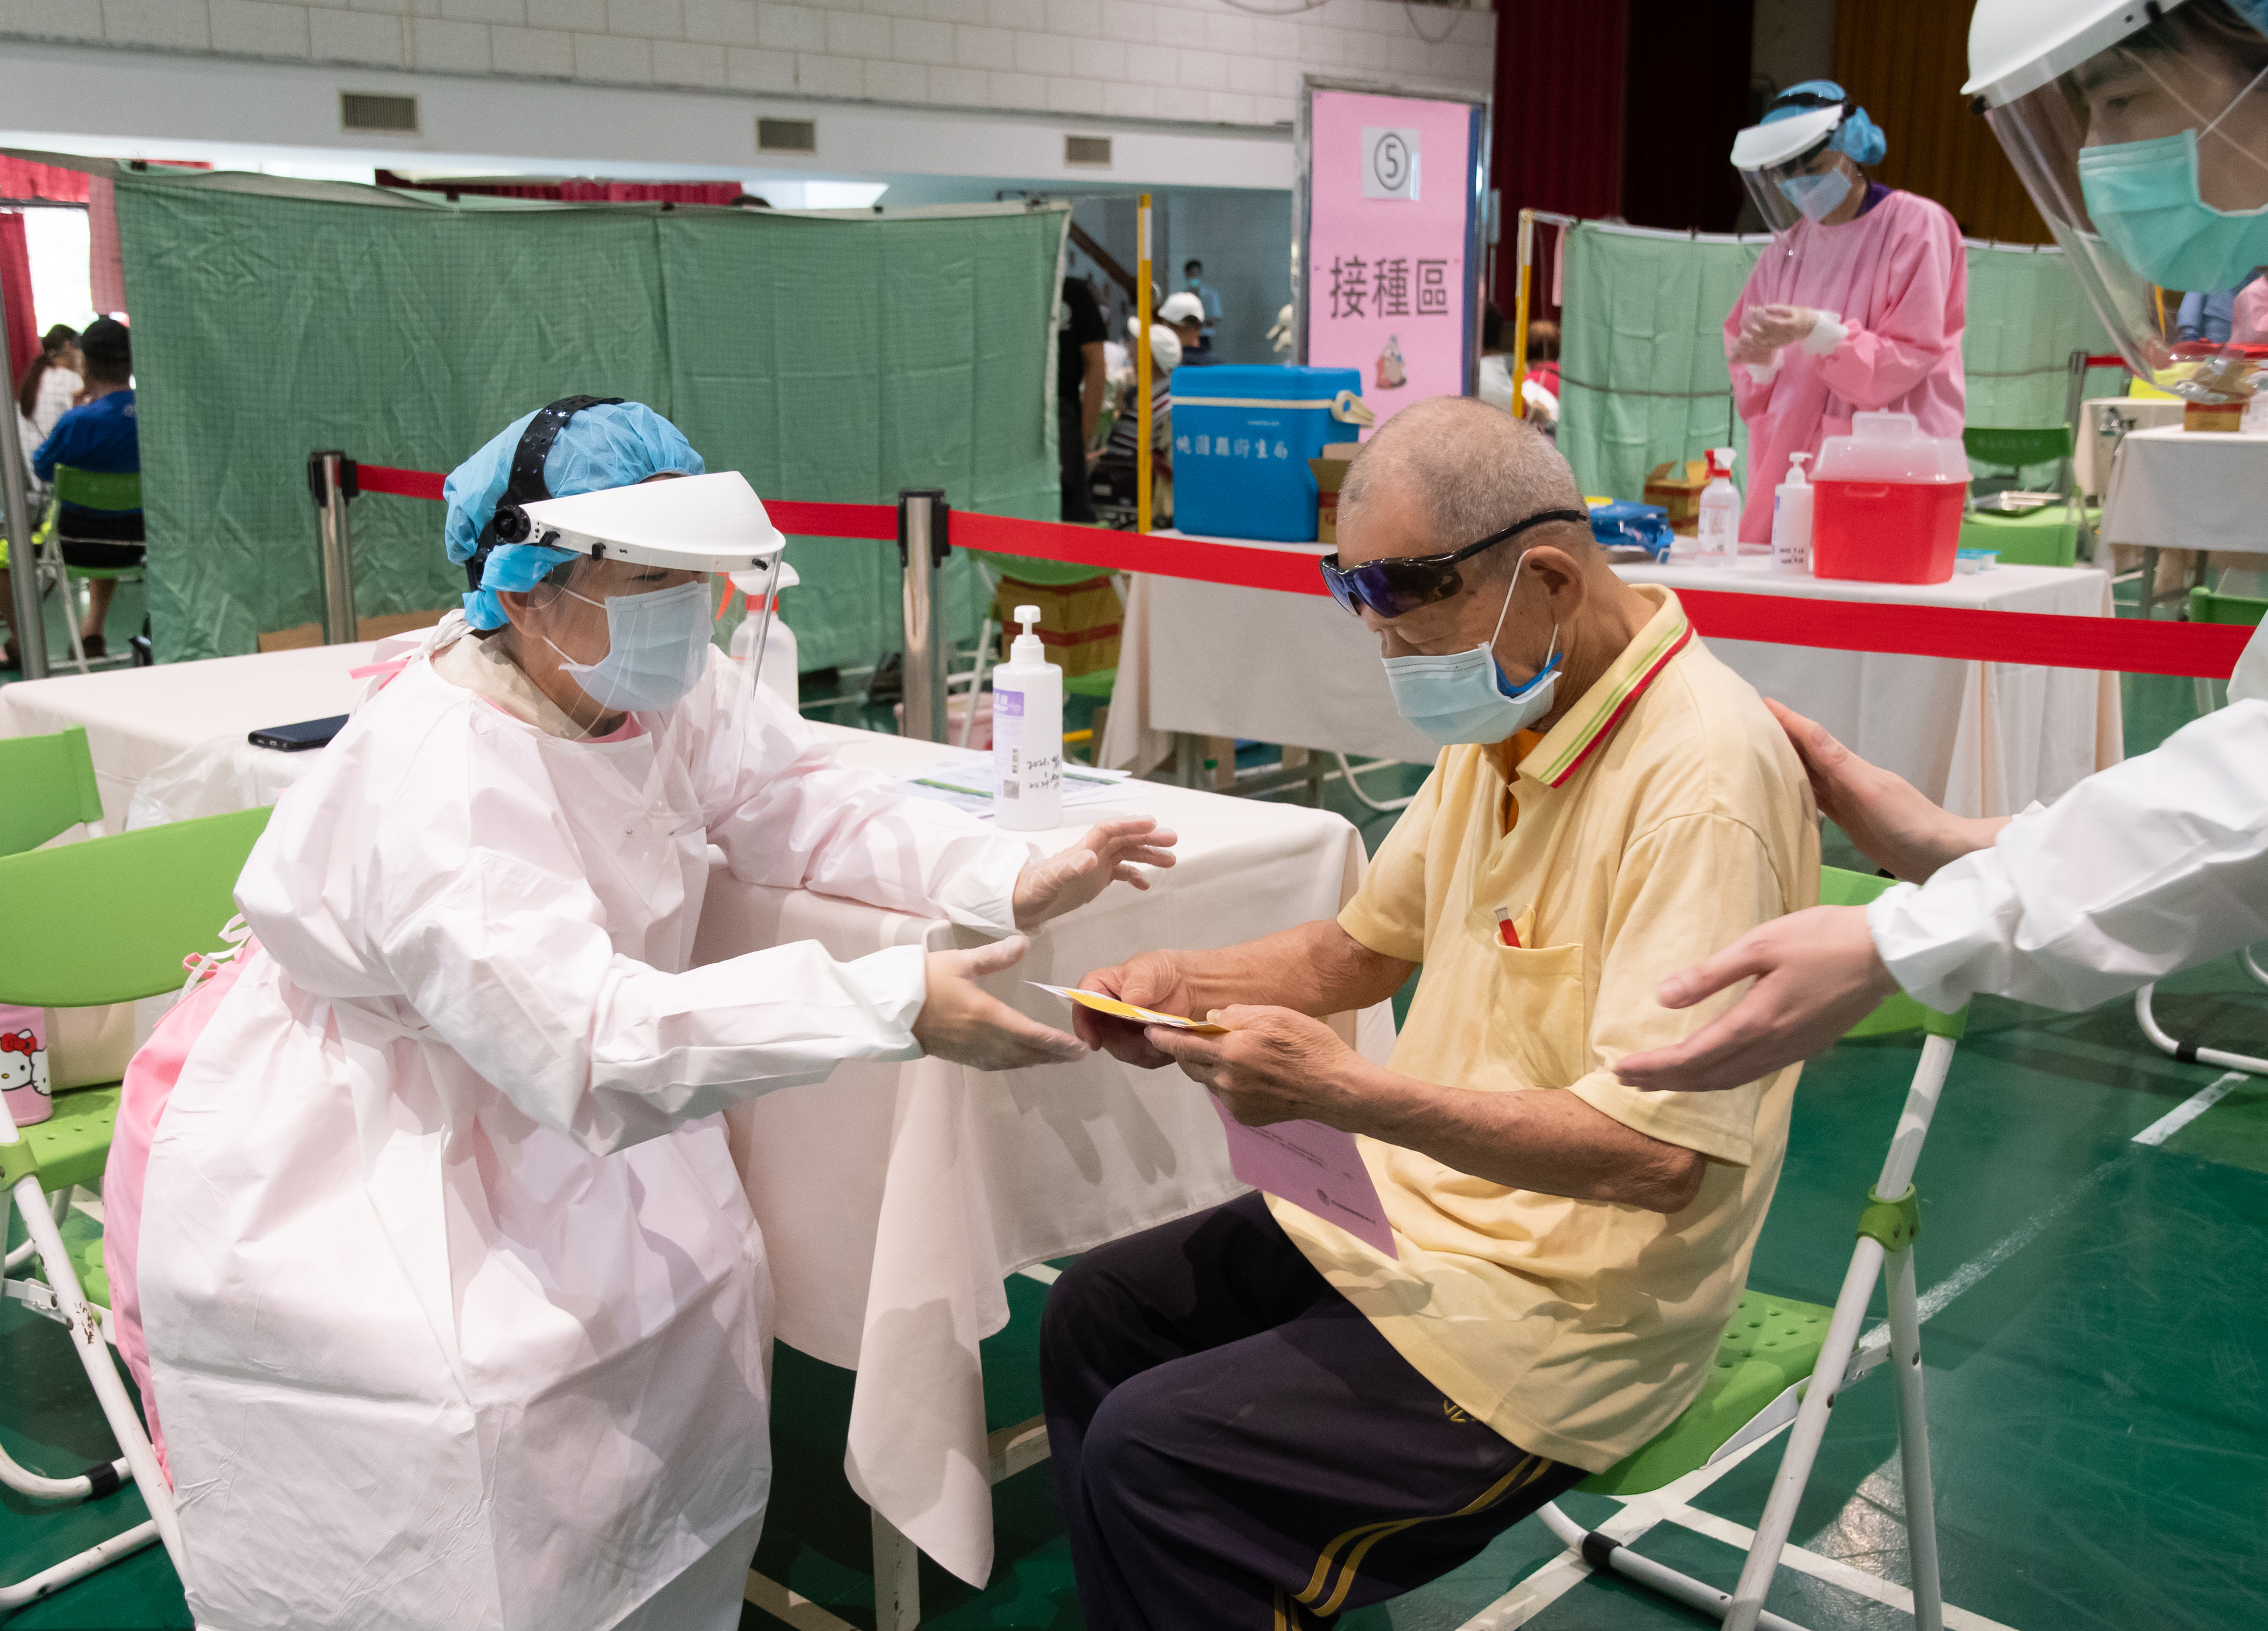 桃市首日88歲以上長者接種疫苗  望達到精準接種、友善接種、安全接種